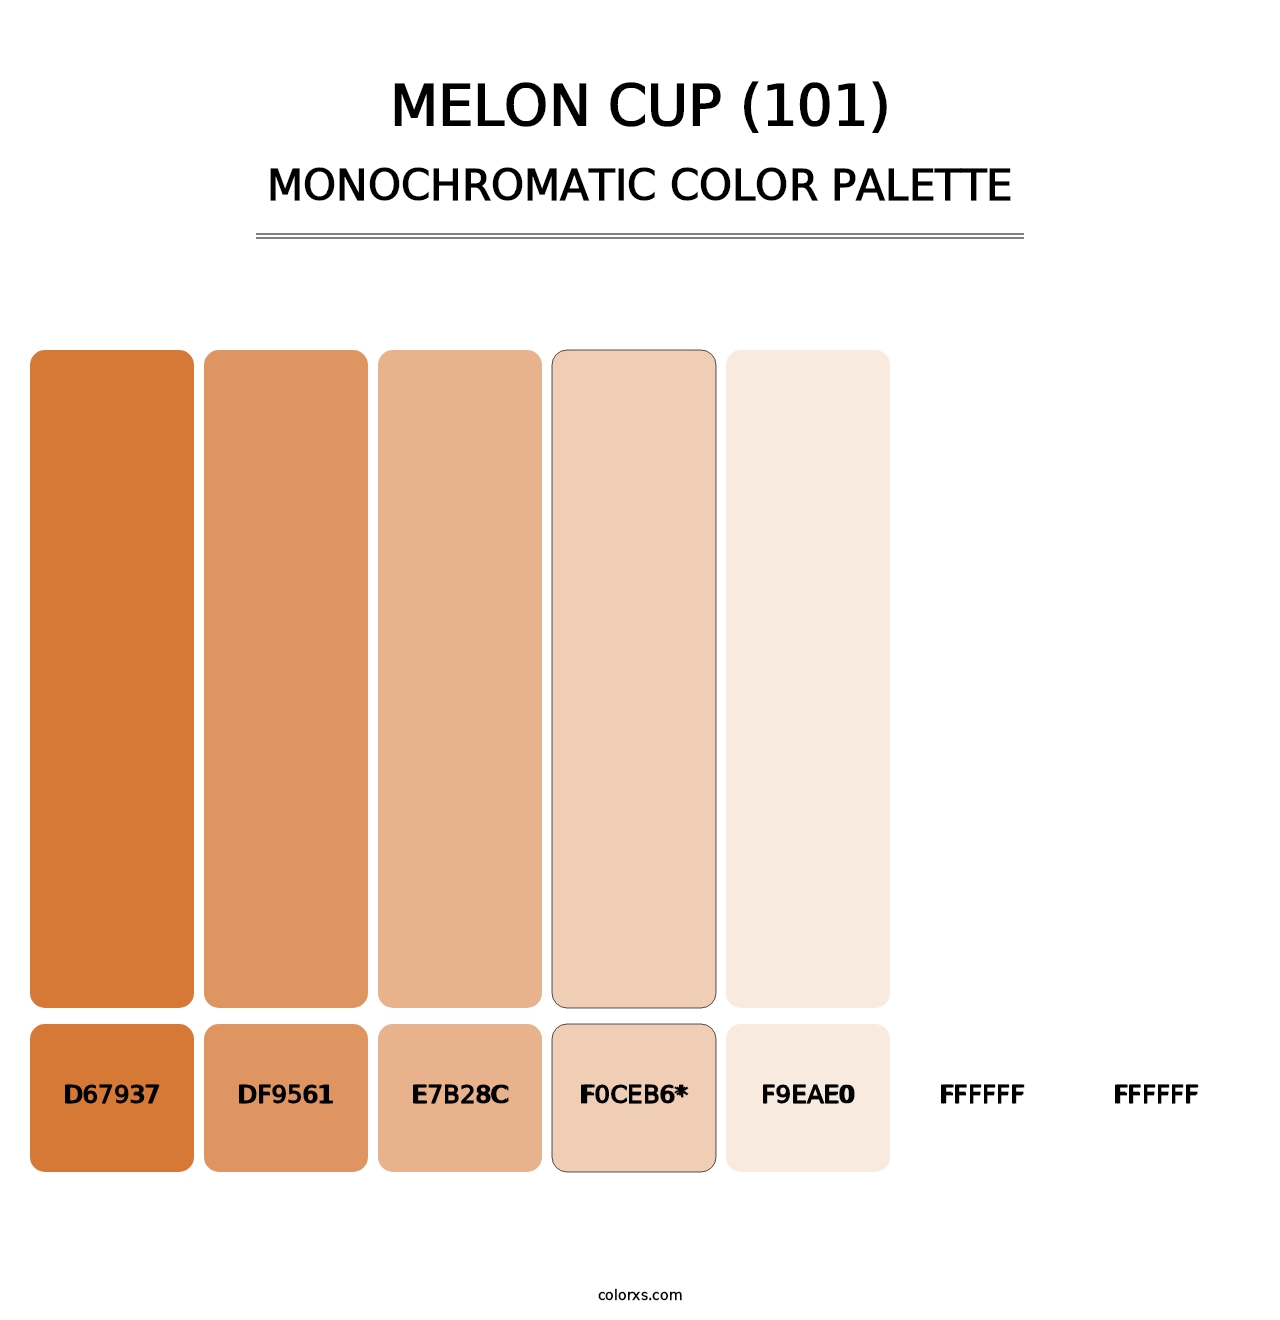 Melon Cup (101) - Monochromatic Color Palette